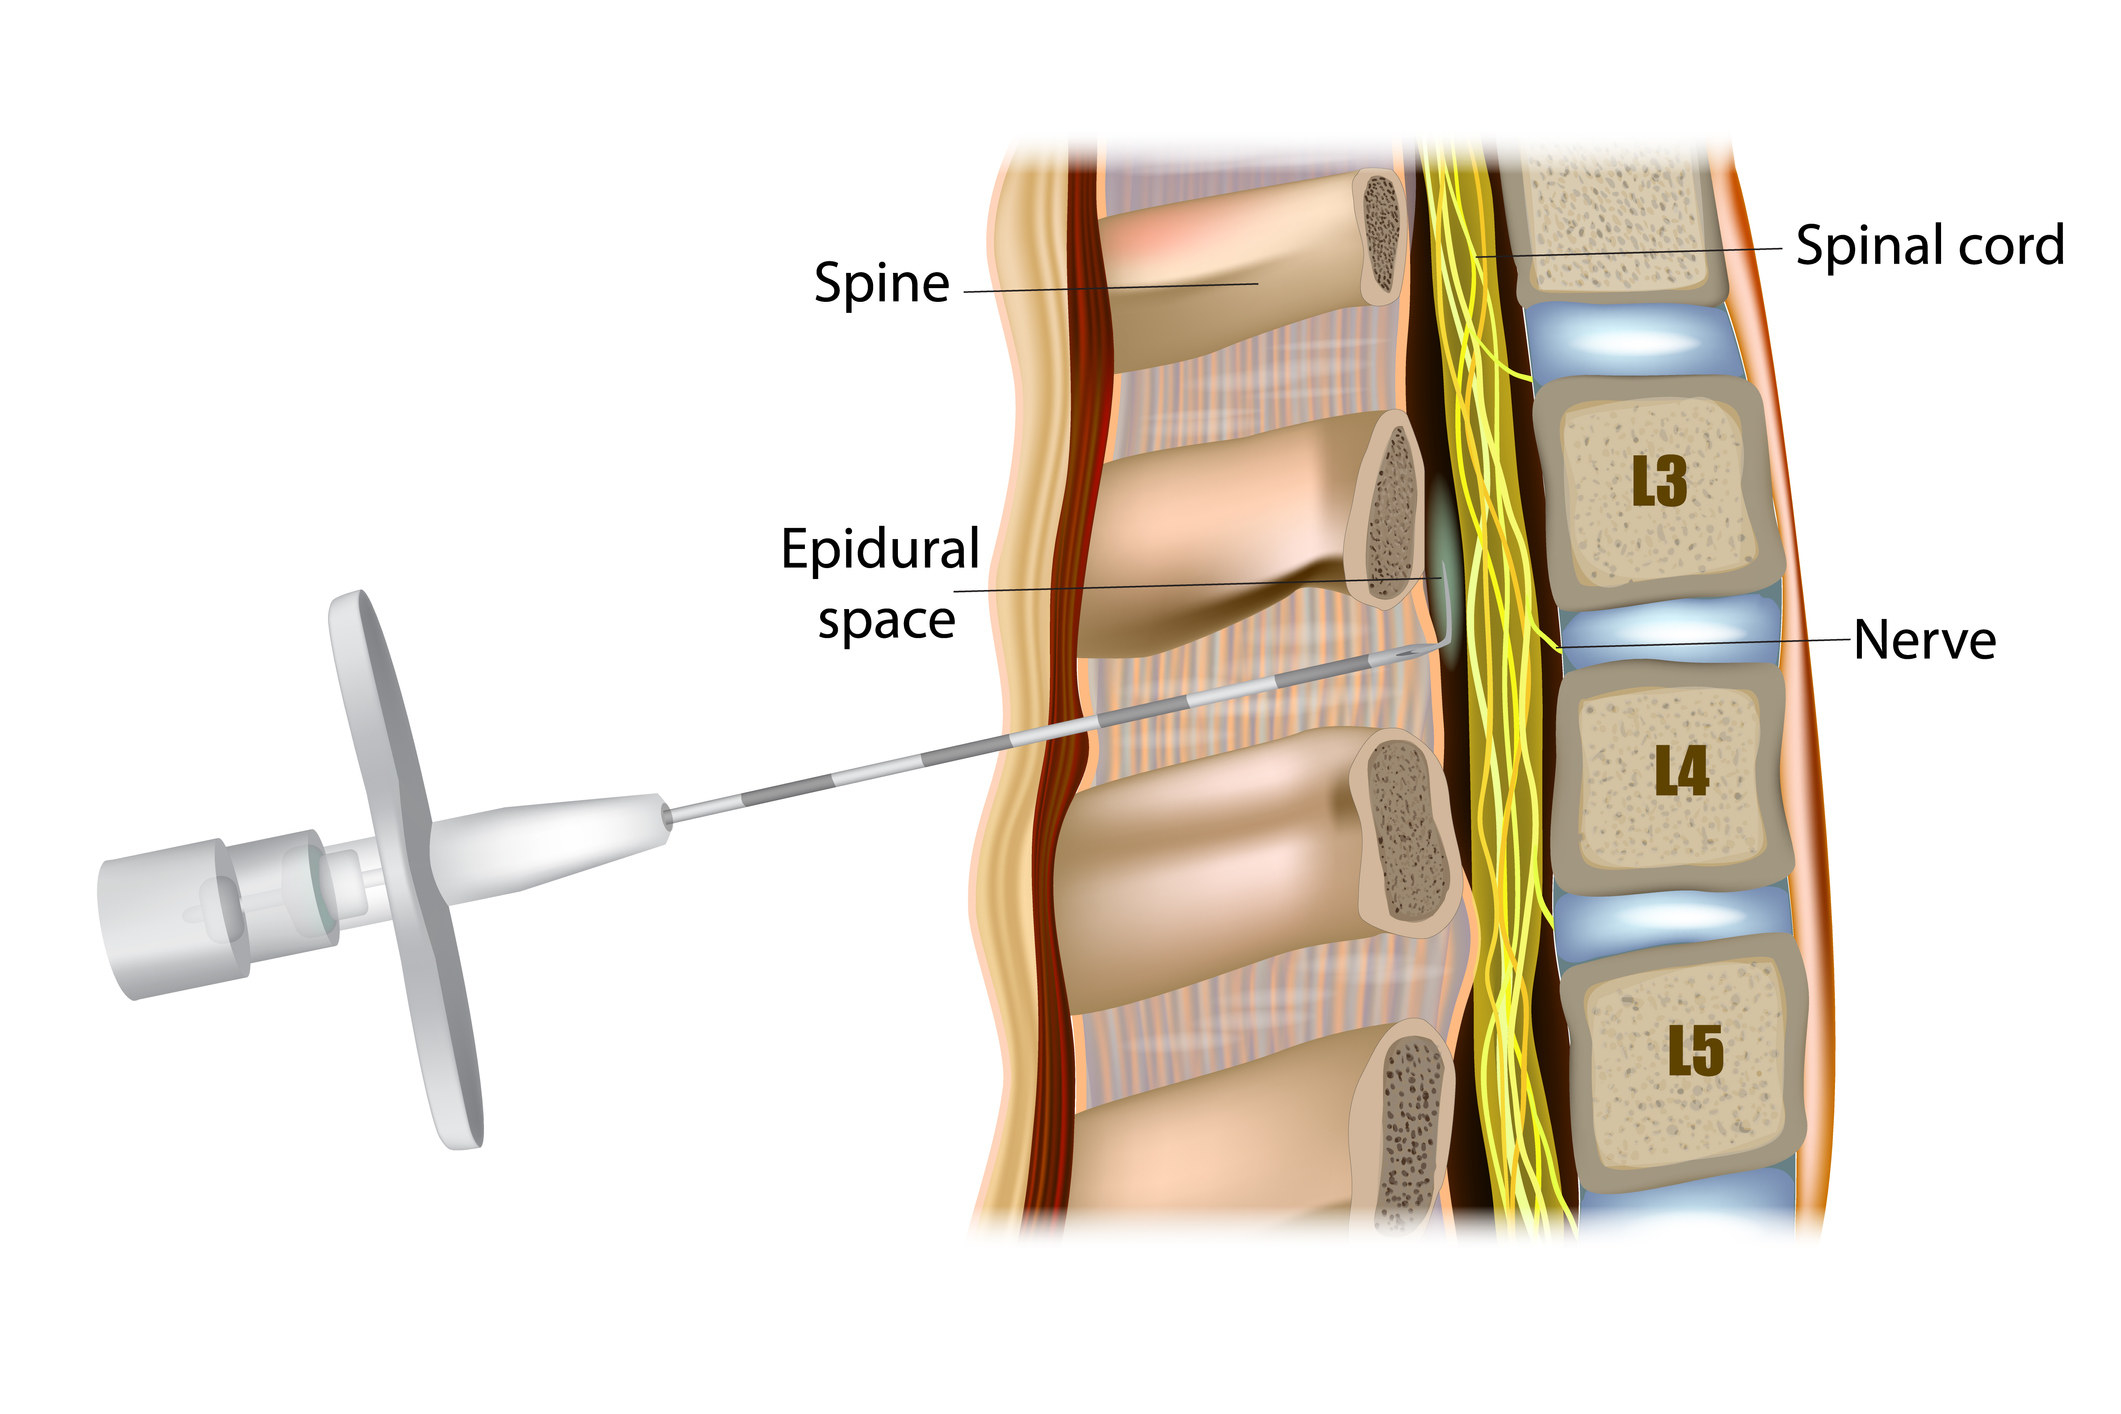 针被插入的插图由脊髓硬膜外腔